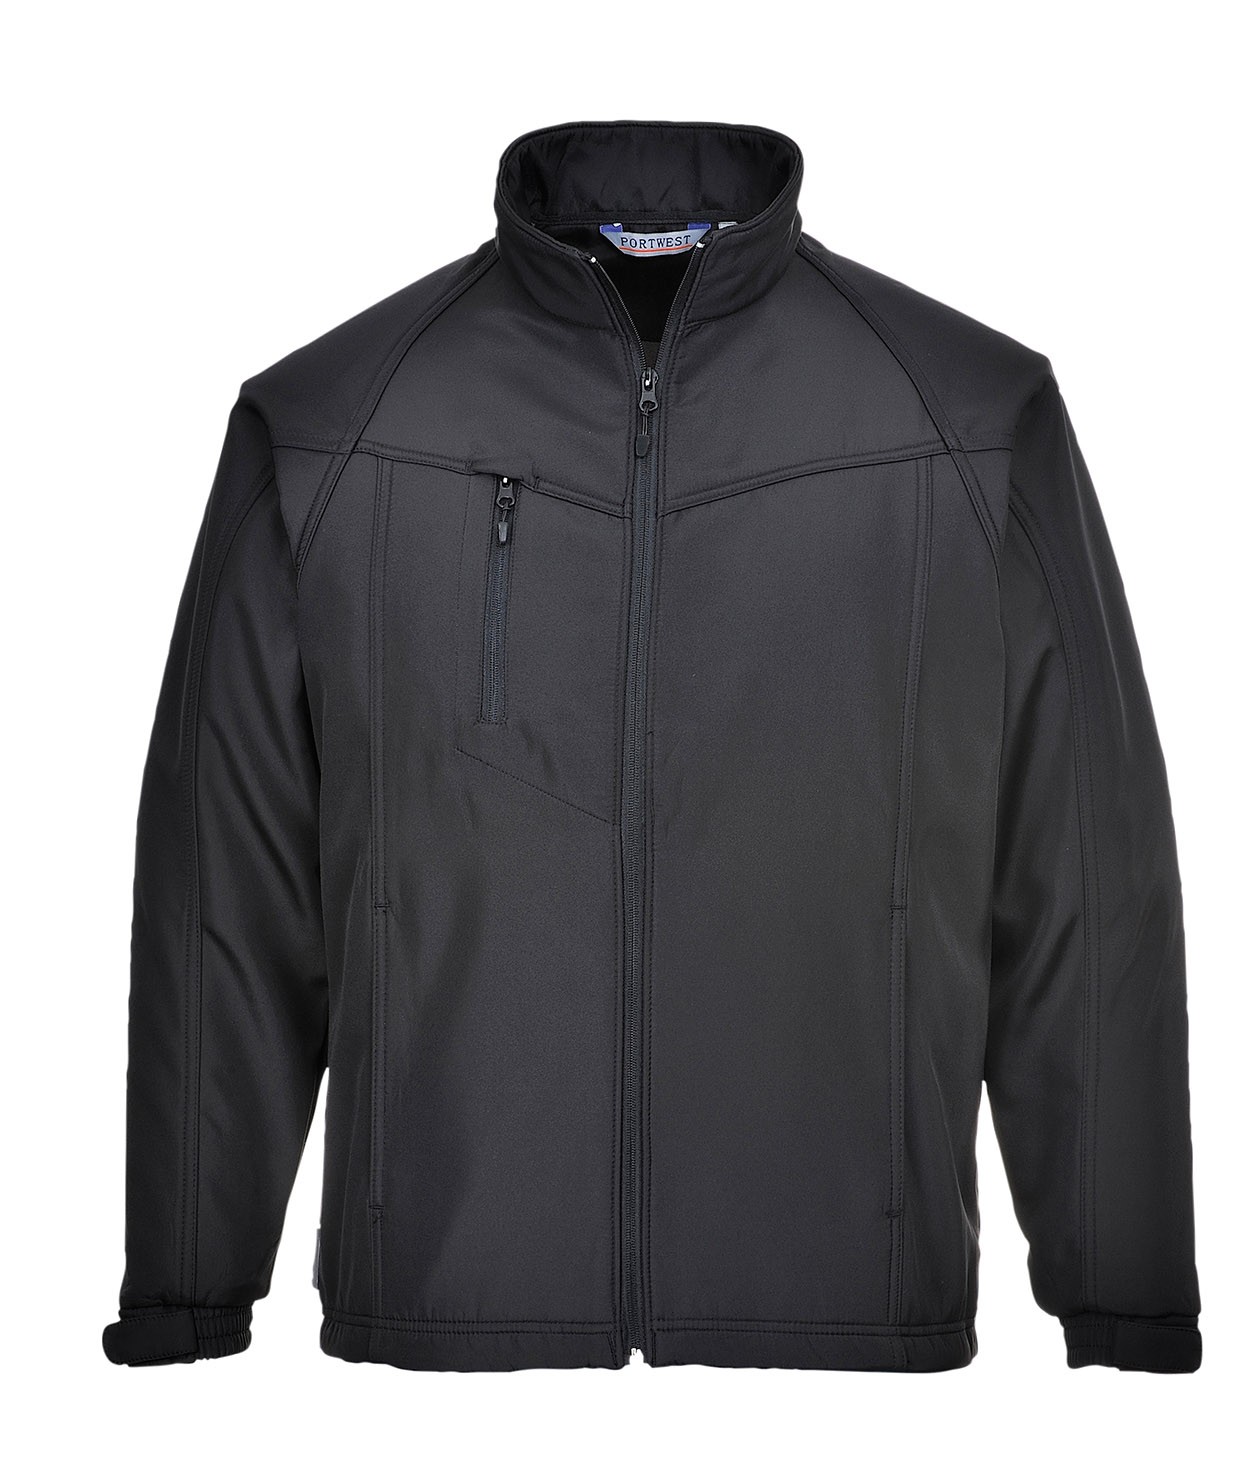 Oregon Softshell Jacket With Adjustable Cuffs | Bodyguard Workwear